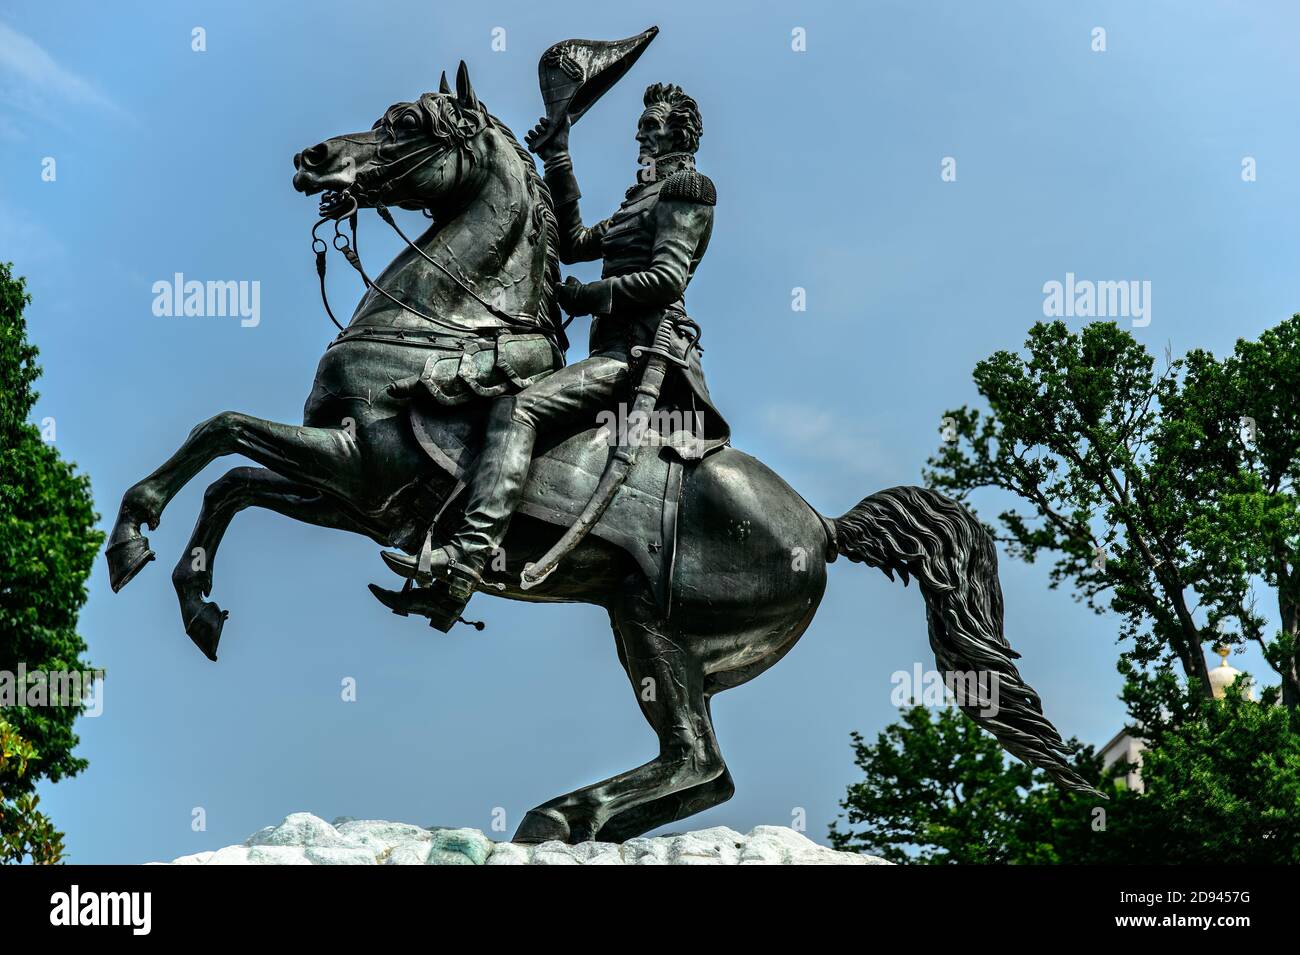 Statua di bronzo del generale Andrew Jackson in Lafayette Square situata nel President's Park di Washington, D.C. Foto Stock